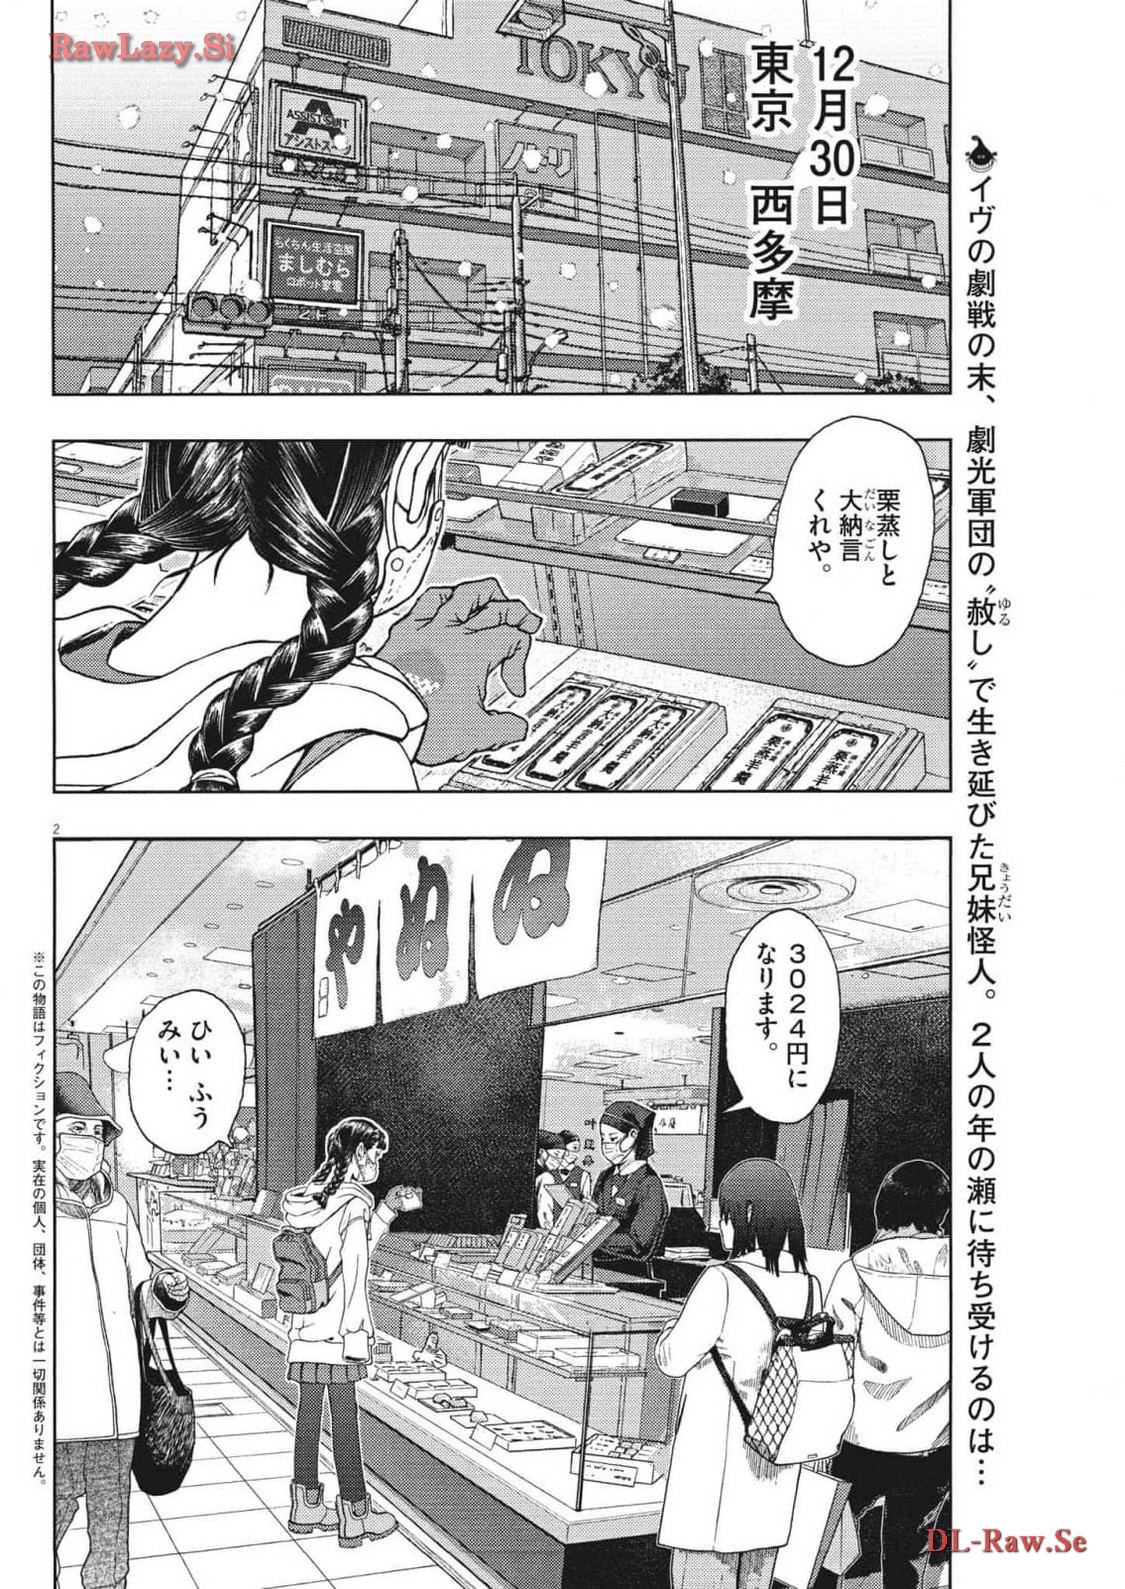 Gekkou Kamen - Chapter 43 - Page 2